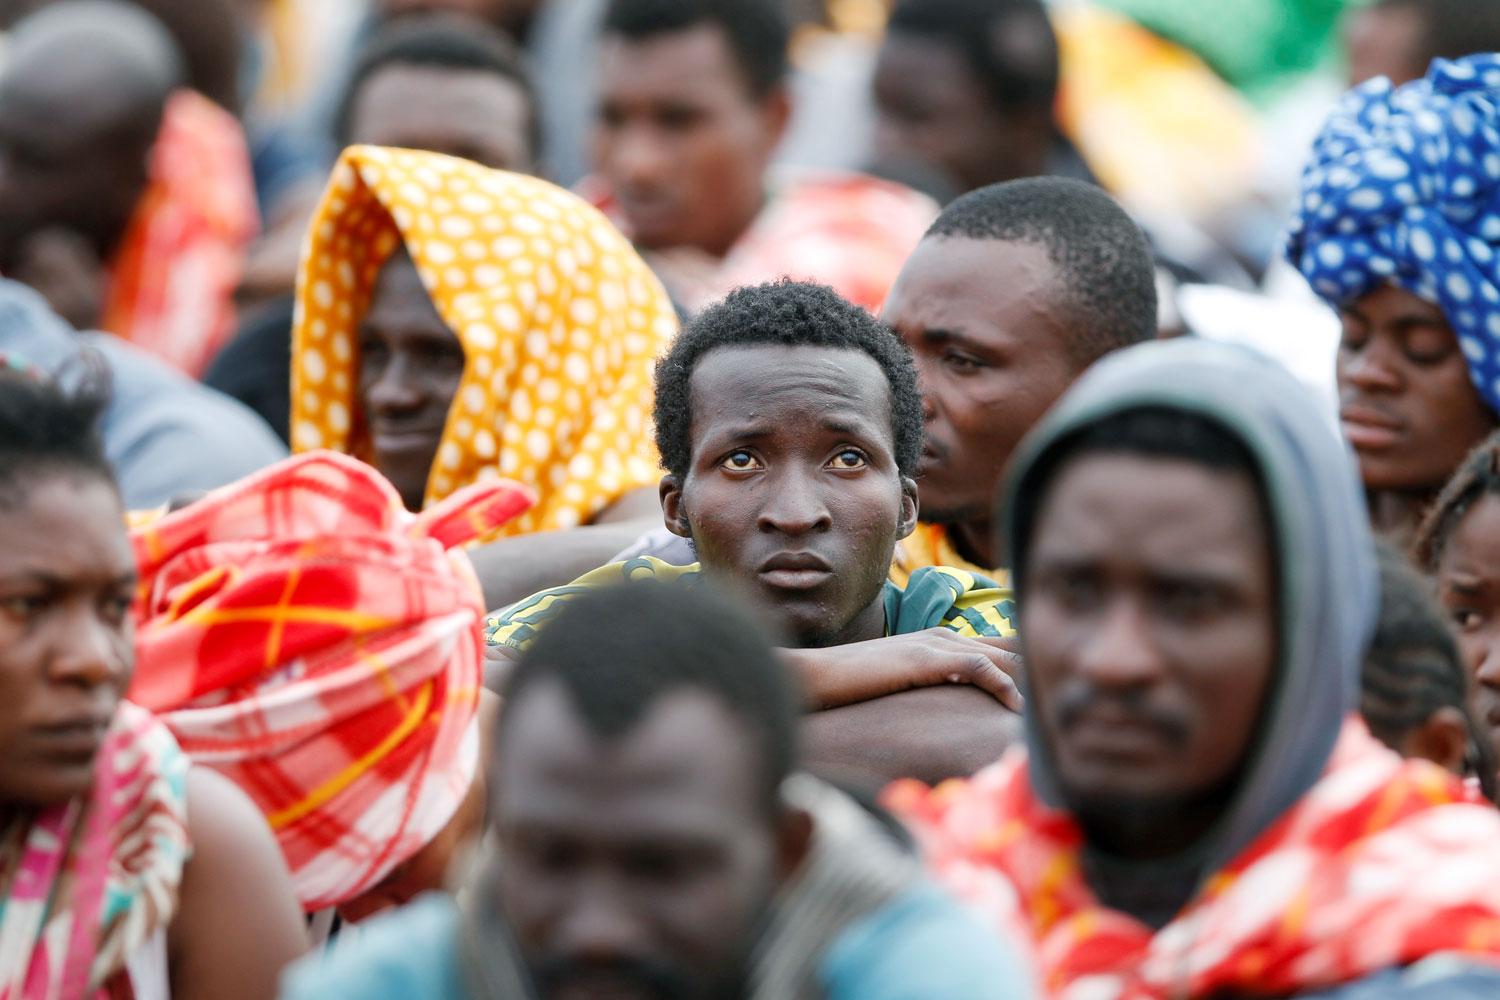 Menekültek a szicíliai partra szállás után. Az embercsempészek alig várják a jó időt